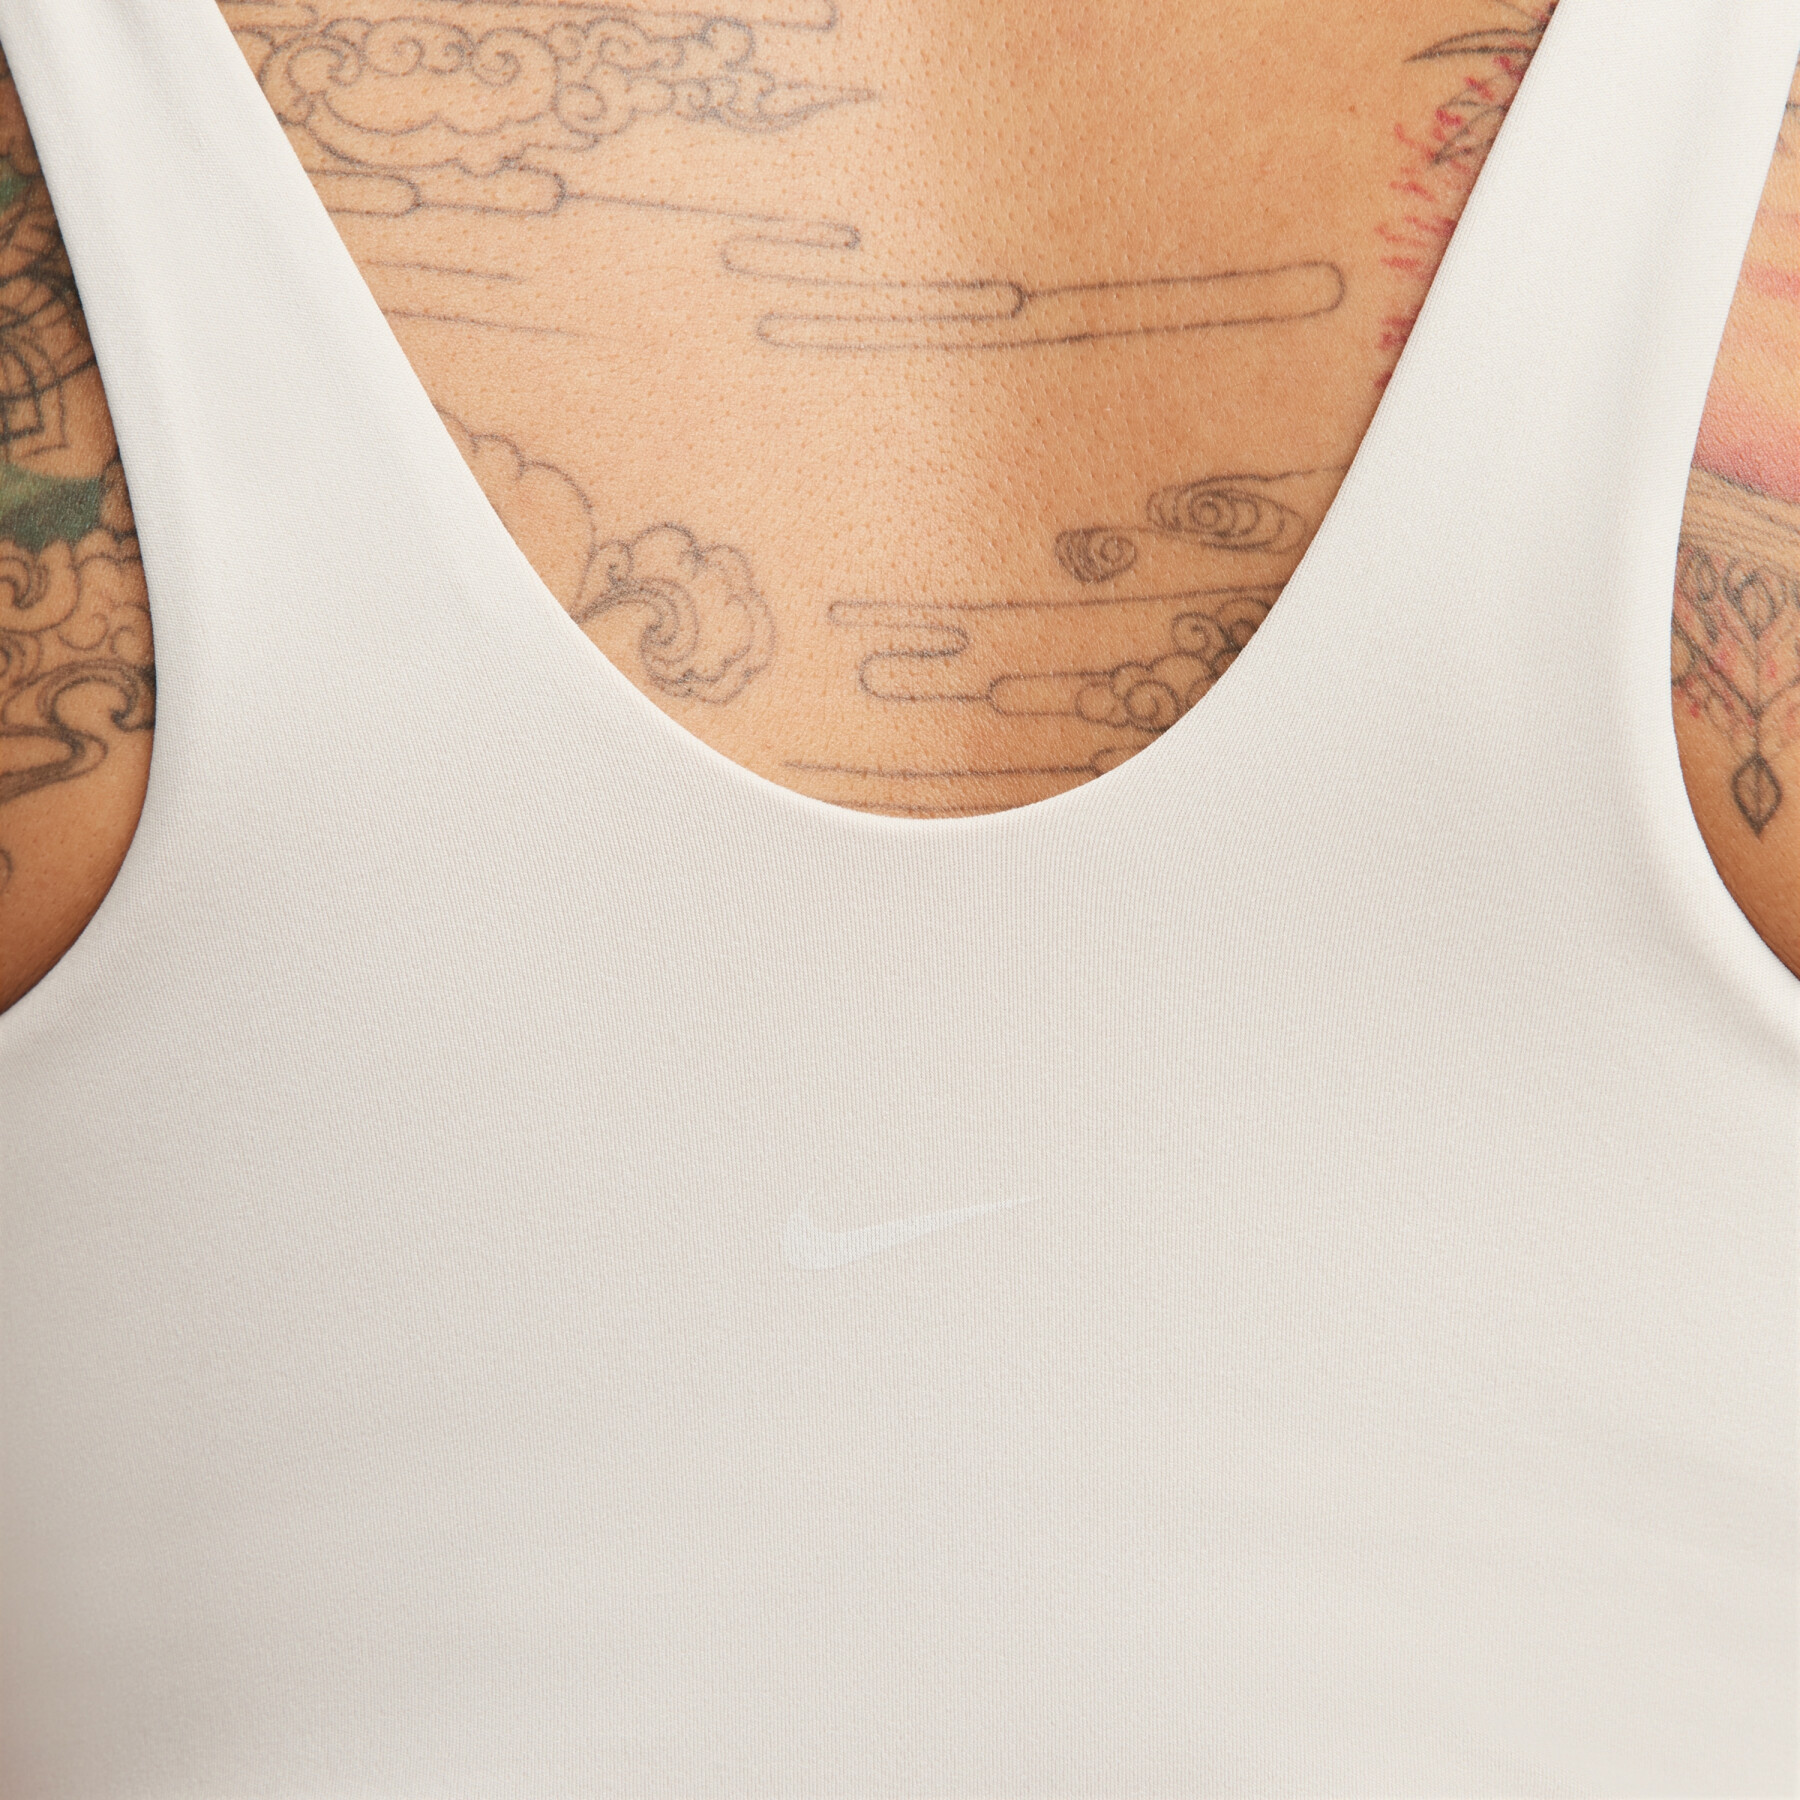 Women's lightweight padded bra Nike Alate